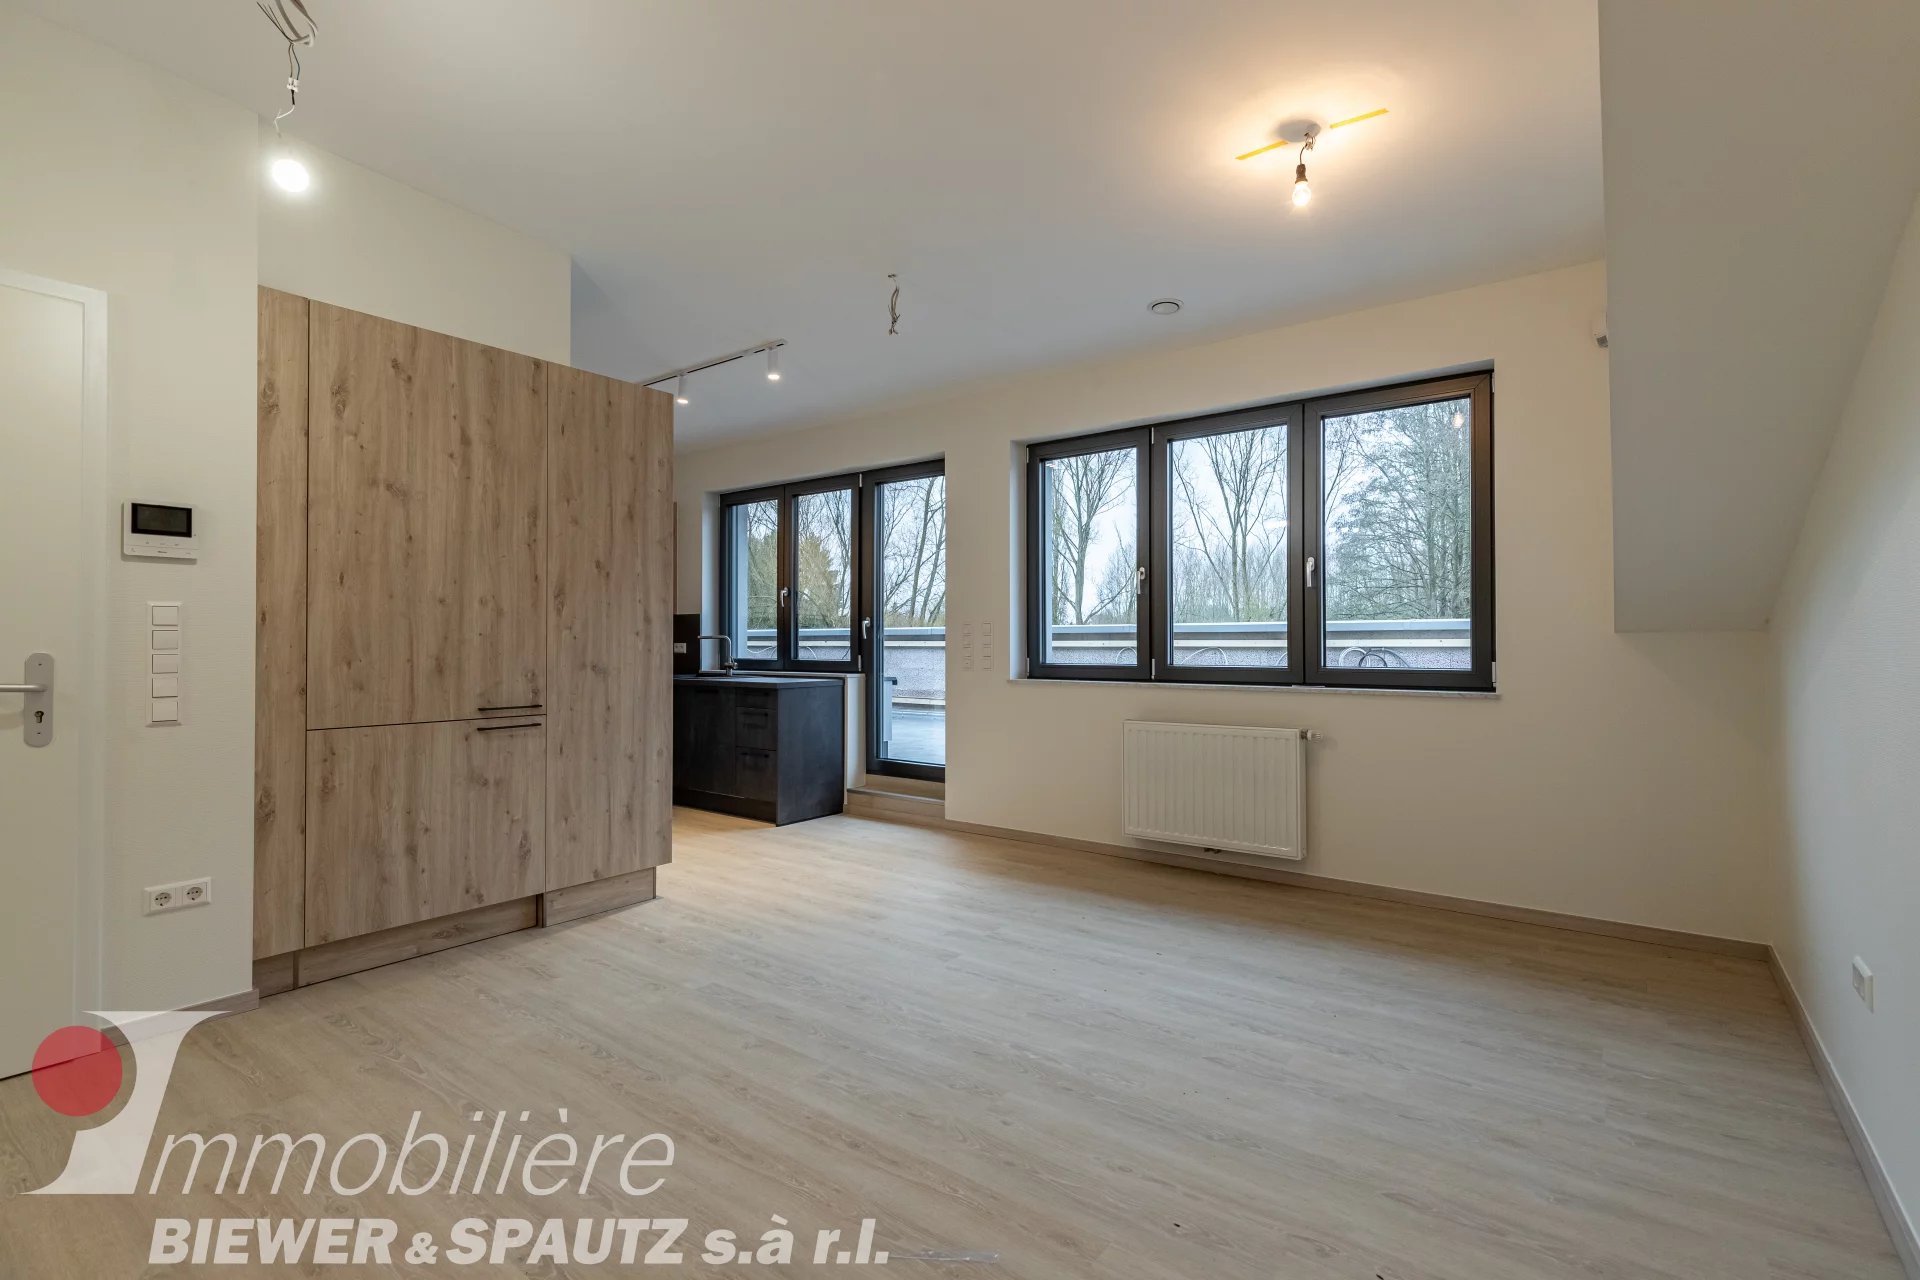 FOR RENT - 2 bedroom apartement in Niederanven